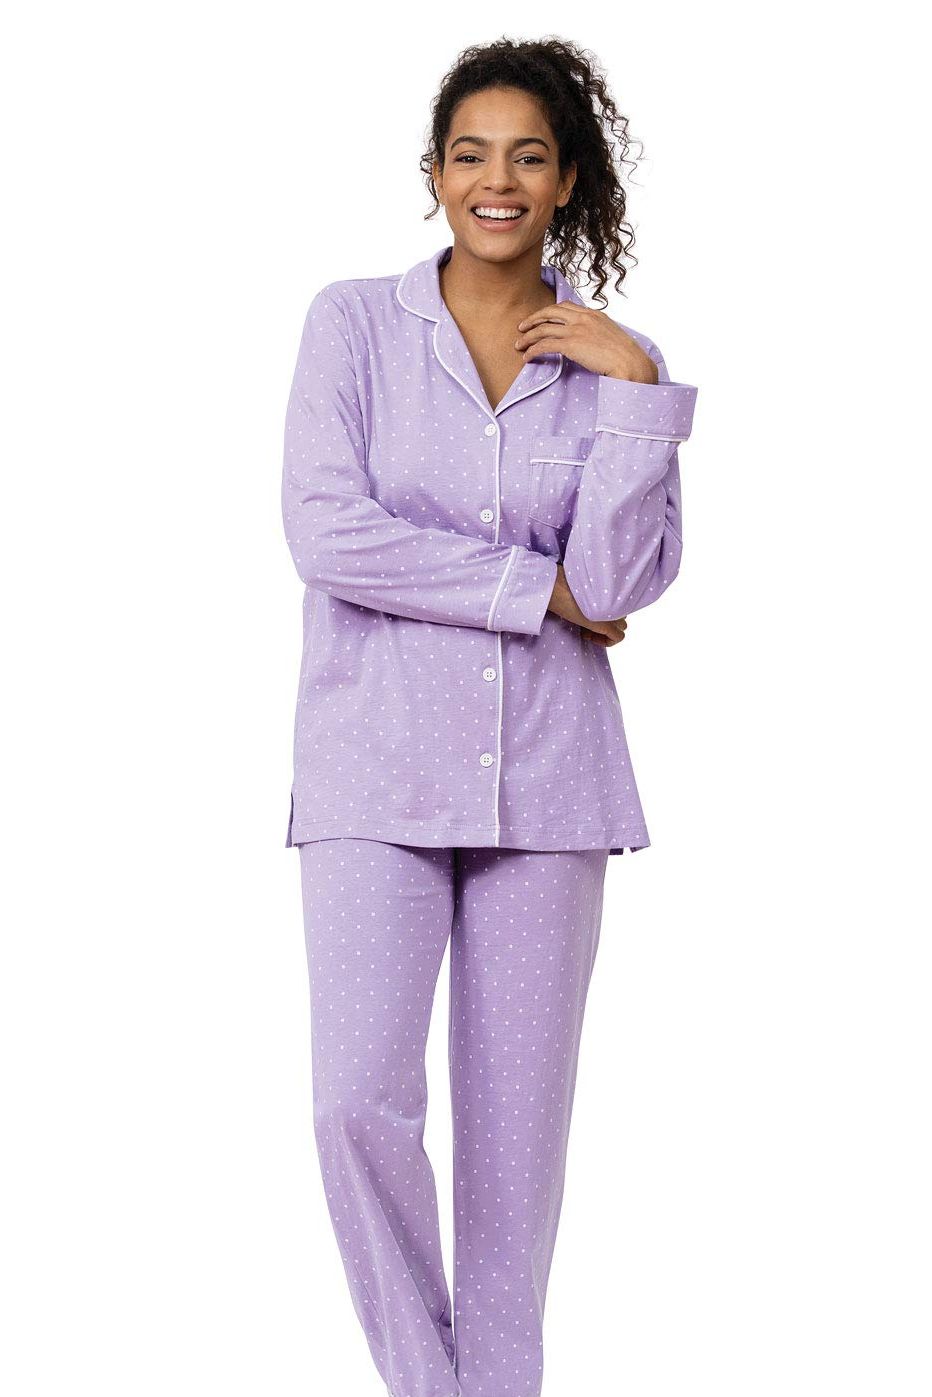 Pima Cotton Women's Pajamas, Incredibly Soft & Cozy, Long & Plus Sizes  Too, Jijamas Long-Sleeve